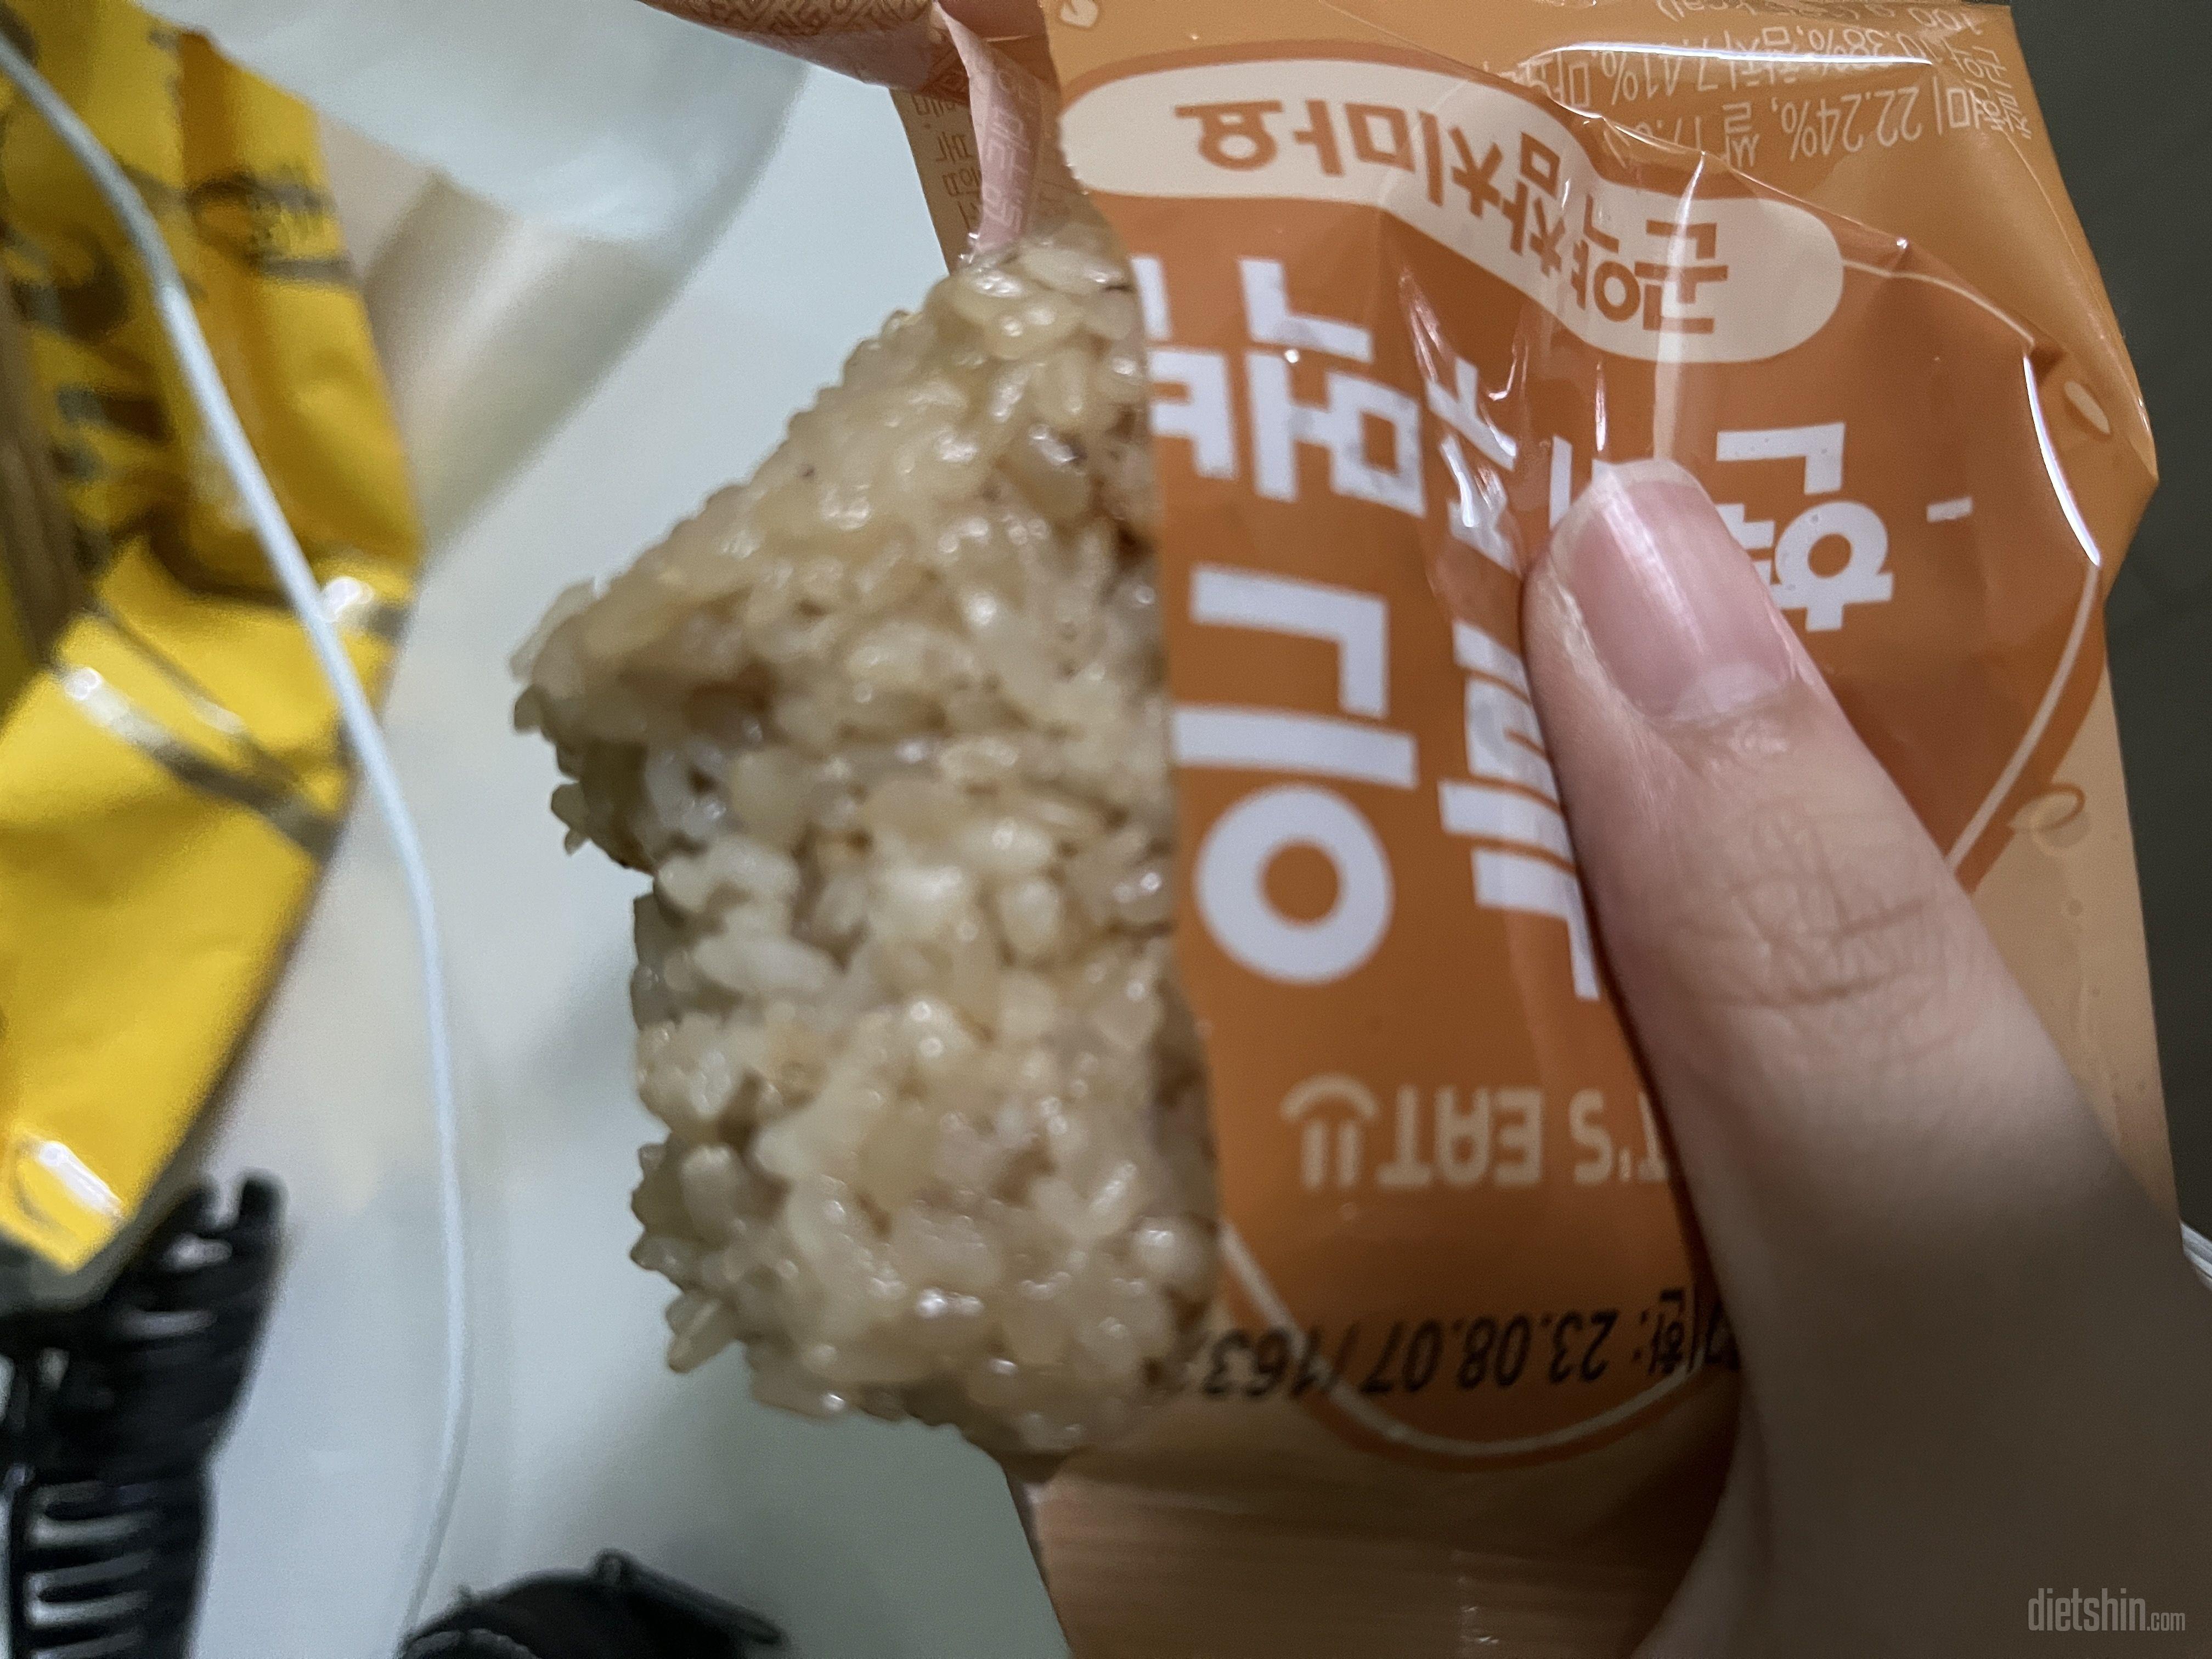 현미주먹밥
참치마요 햄김치 김치치즈